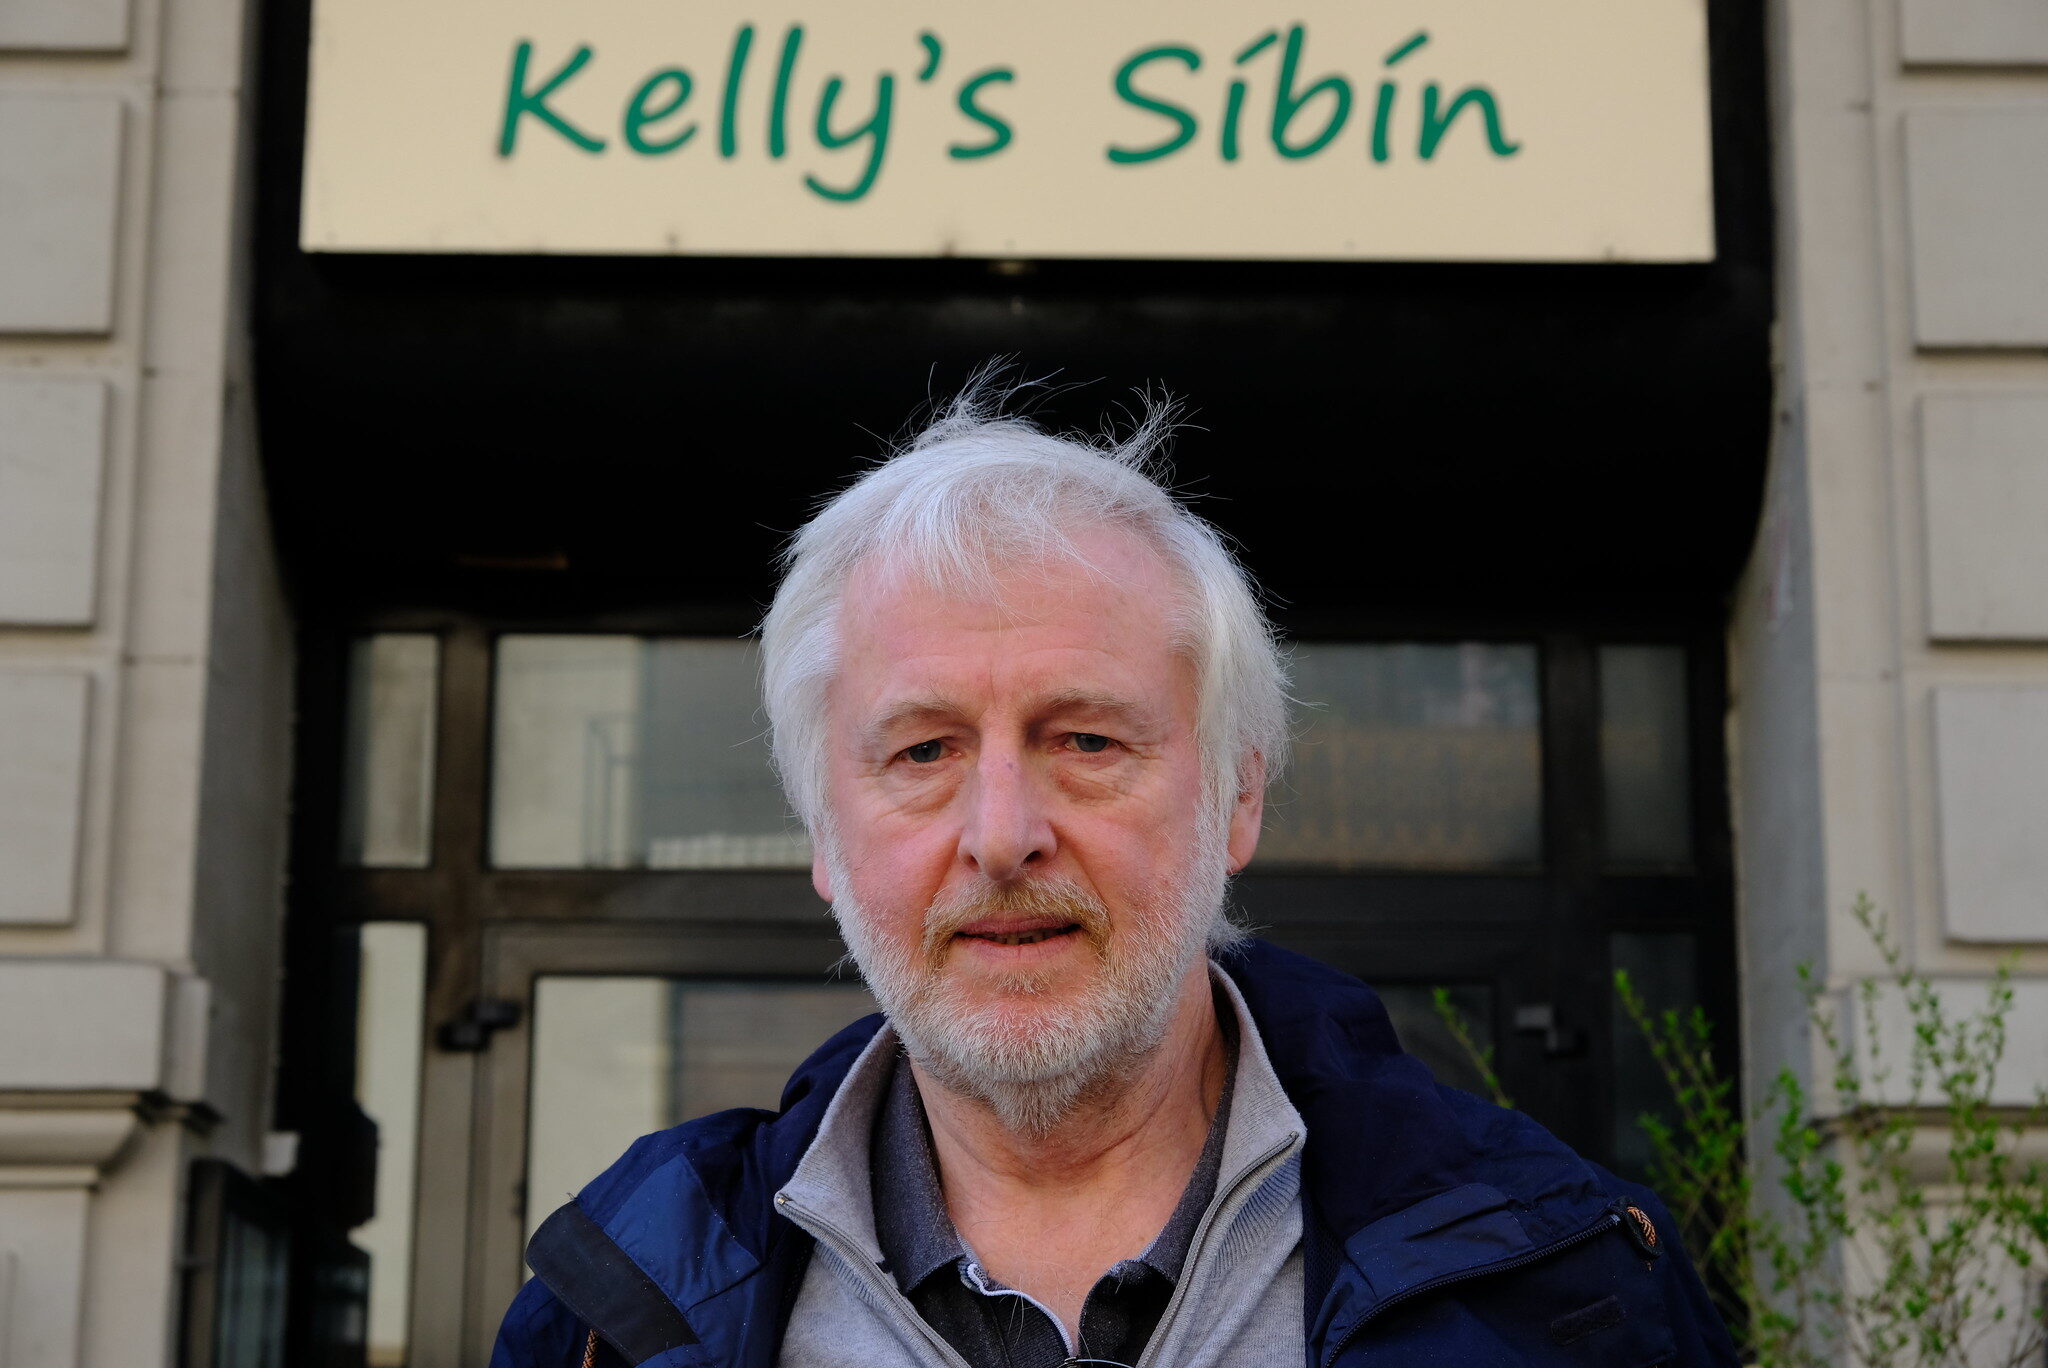 Avec la fermeture du Kelly’s Sibin, Strasbourg perd un pub indépendant pour un énième projet signé Meunier